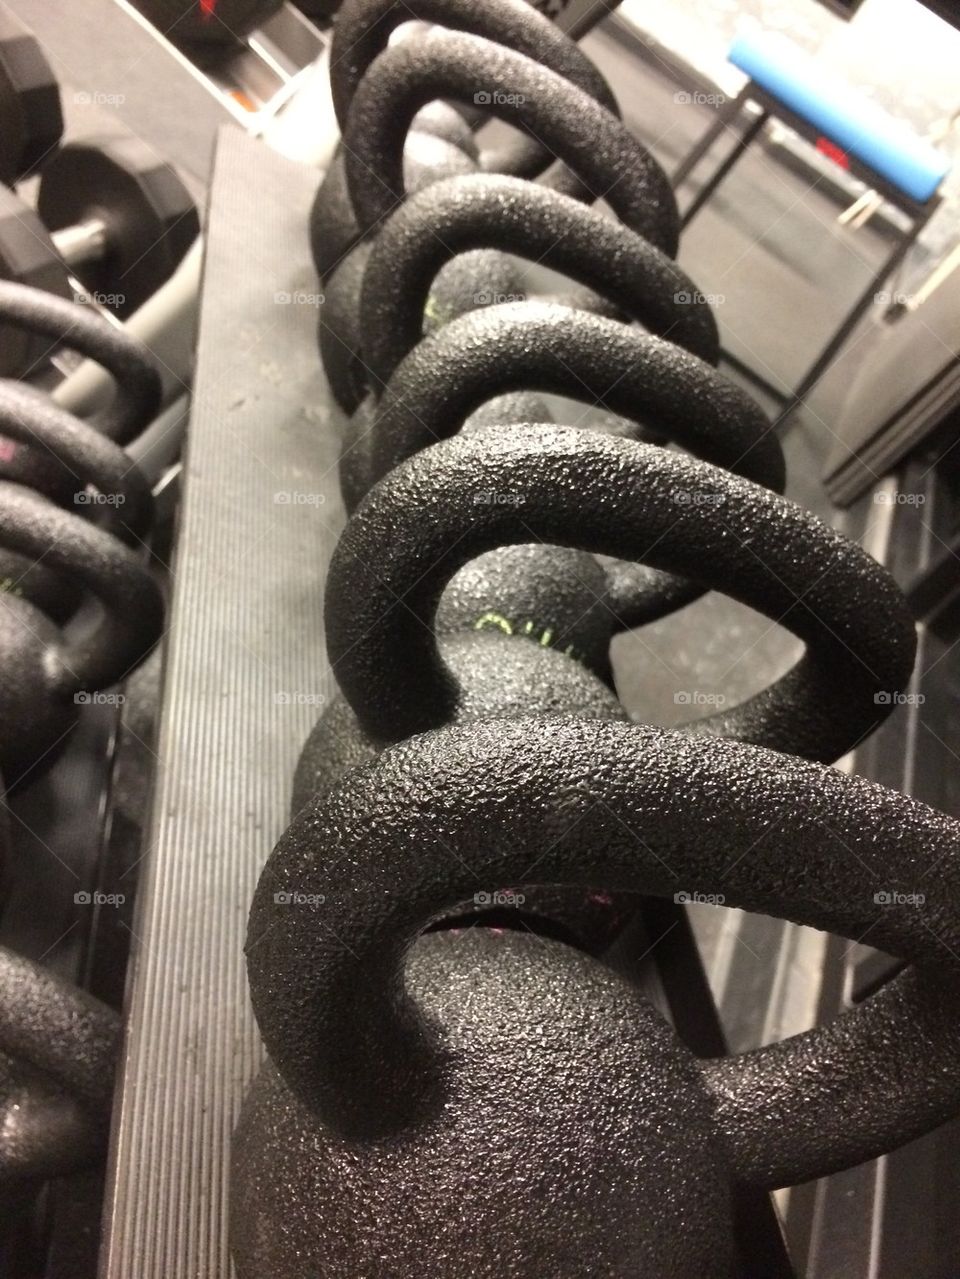 Kettle bells at gym